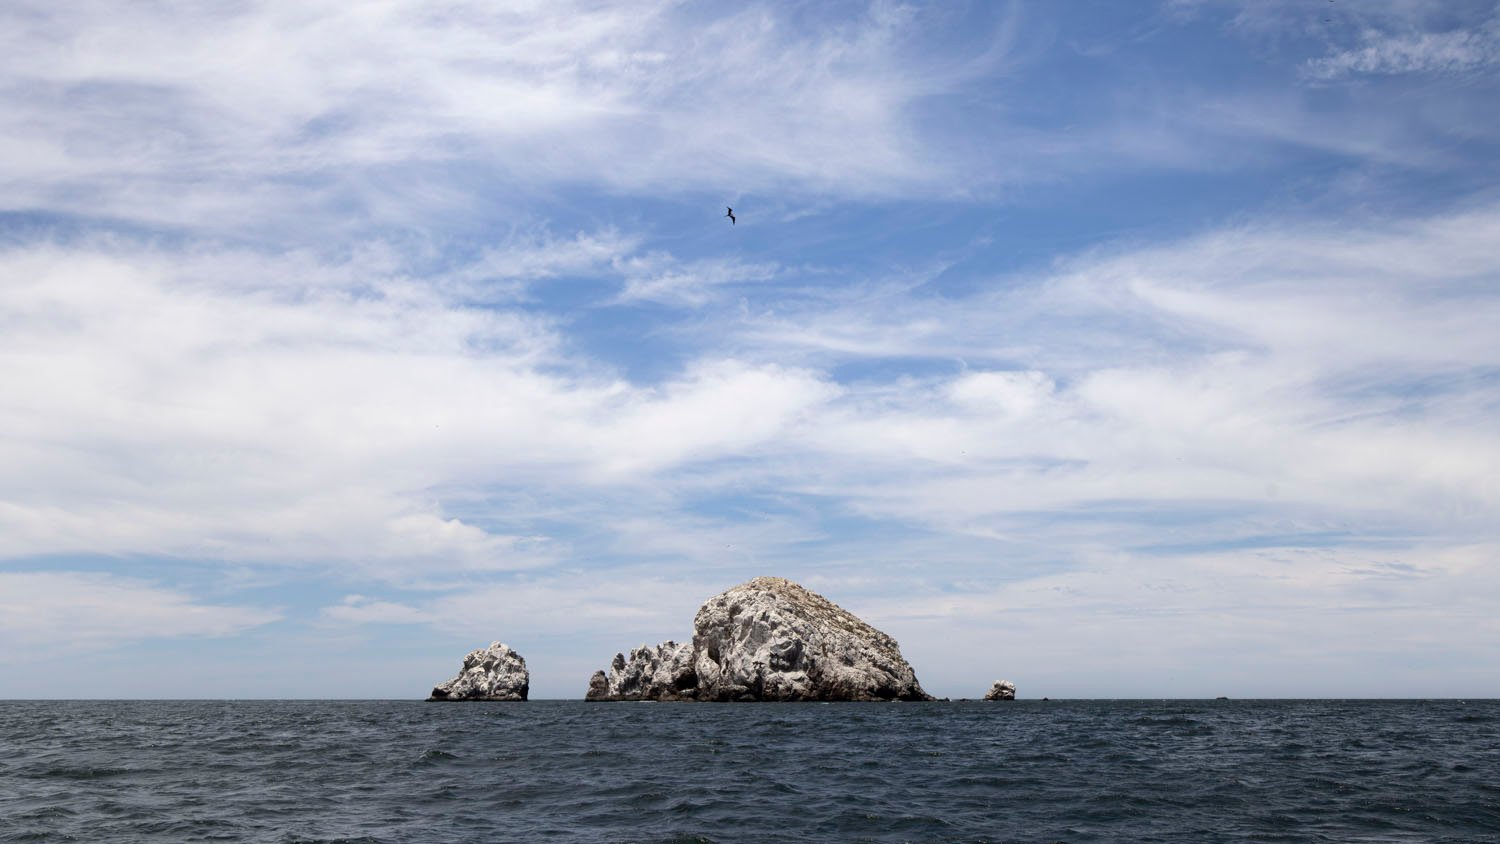 Una formación rocosa grande y escarpada, rodeada por un mar ligeramente agitado bajo un cielo nublado, con un pájaro volando muy por encima.